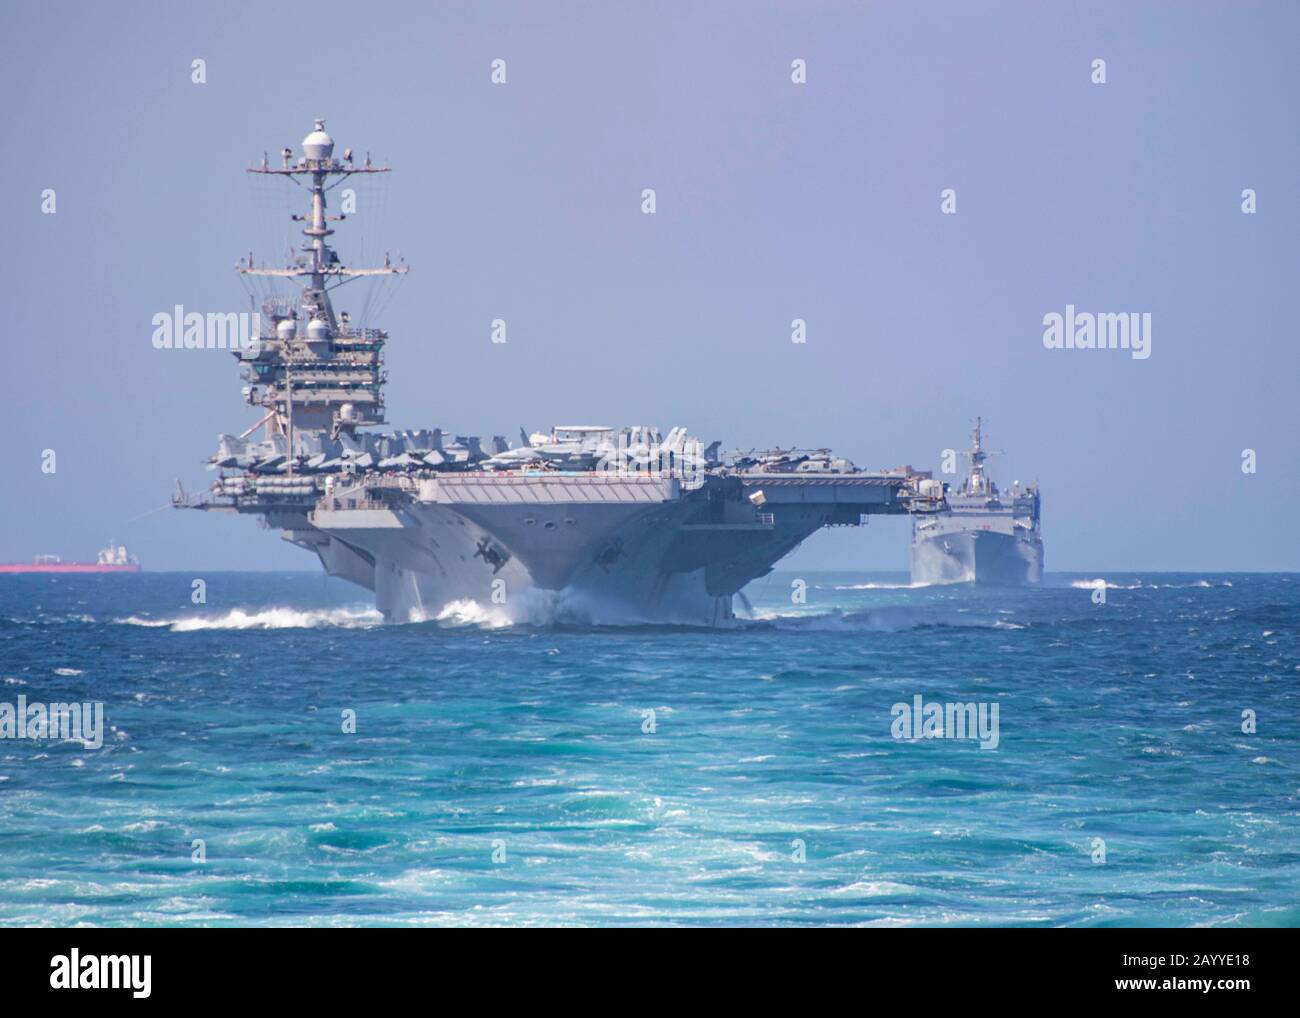 Der Flugzeugträger der US-Marine Nimitz der Klasse USS Harry S. Truman segelt in Formation mit dem schnellen Kampfunterstützungsschiff USNS Supply und dem Lenkflugkörperzerstörer USS Forrest Sherman unterwegs, während sie die strategische Straße Bab al-Mandeb Strait am 17. Dezember 2019 im Roten Meer durchfahren. Stockfoto